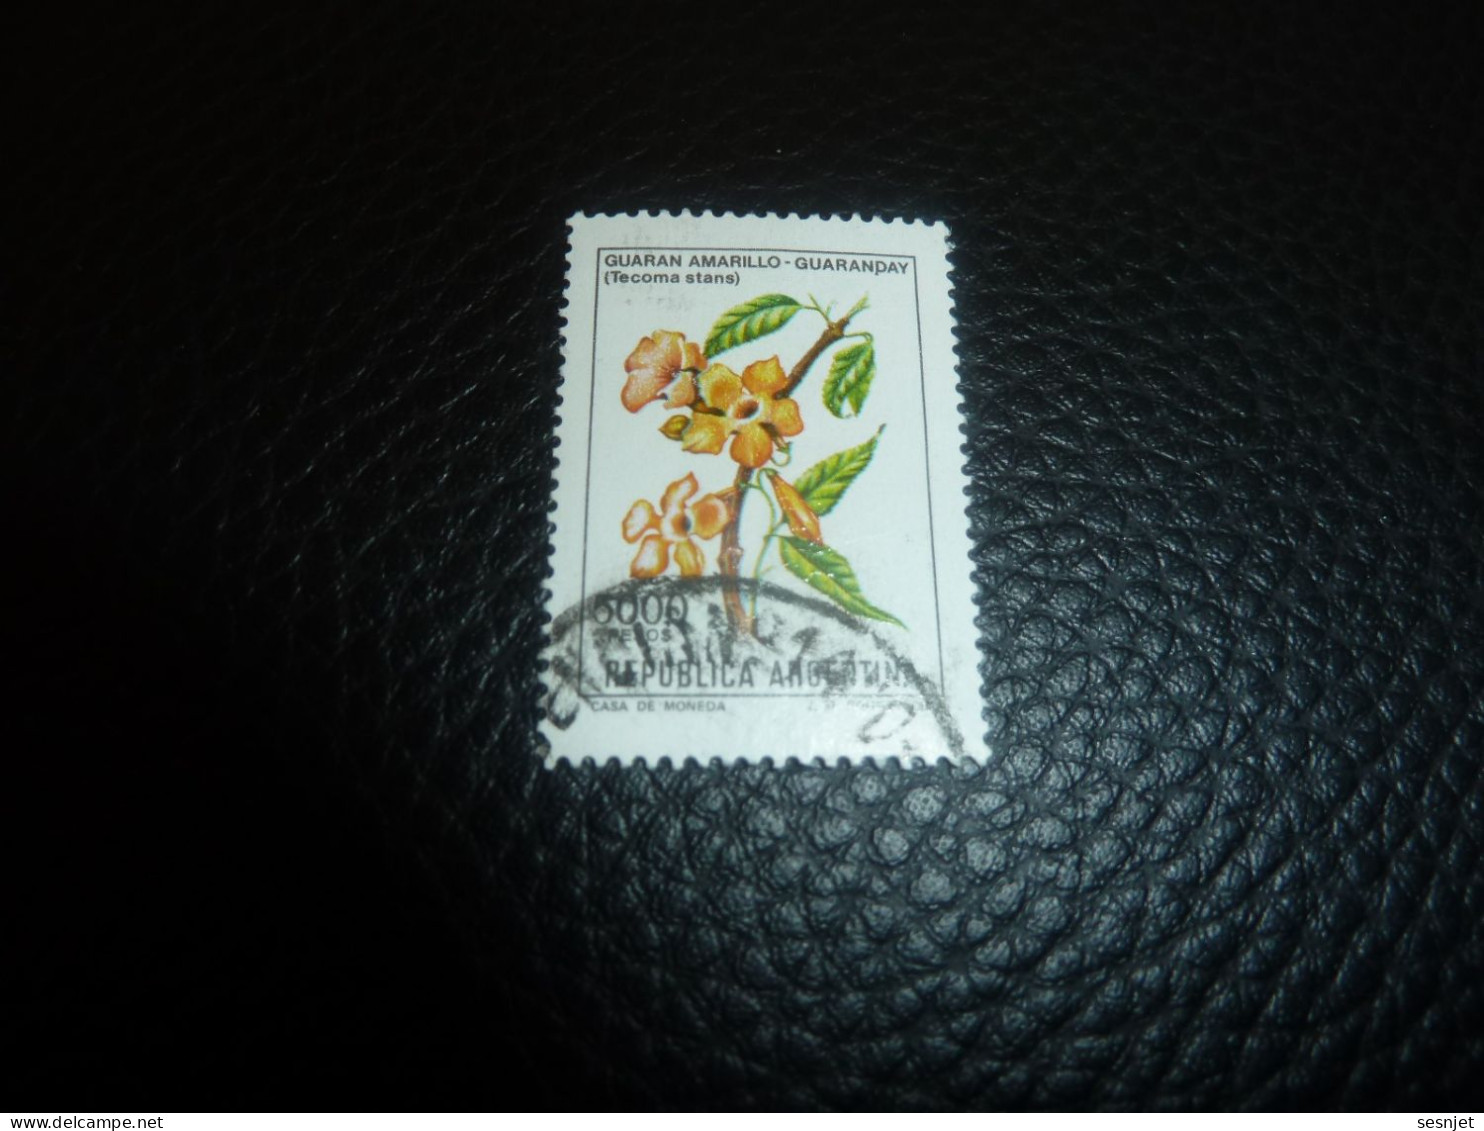 Républica Argentina - Guaran Amarillo Quaranday (Tecoma)- 5000 - Pesos - Yt 1292 - Multicolore - Oblitéré - Année 1982 - - Used Stamps